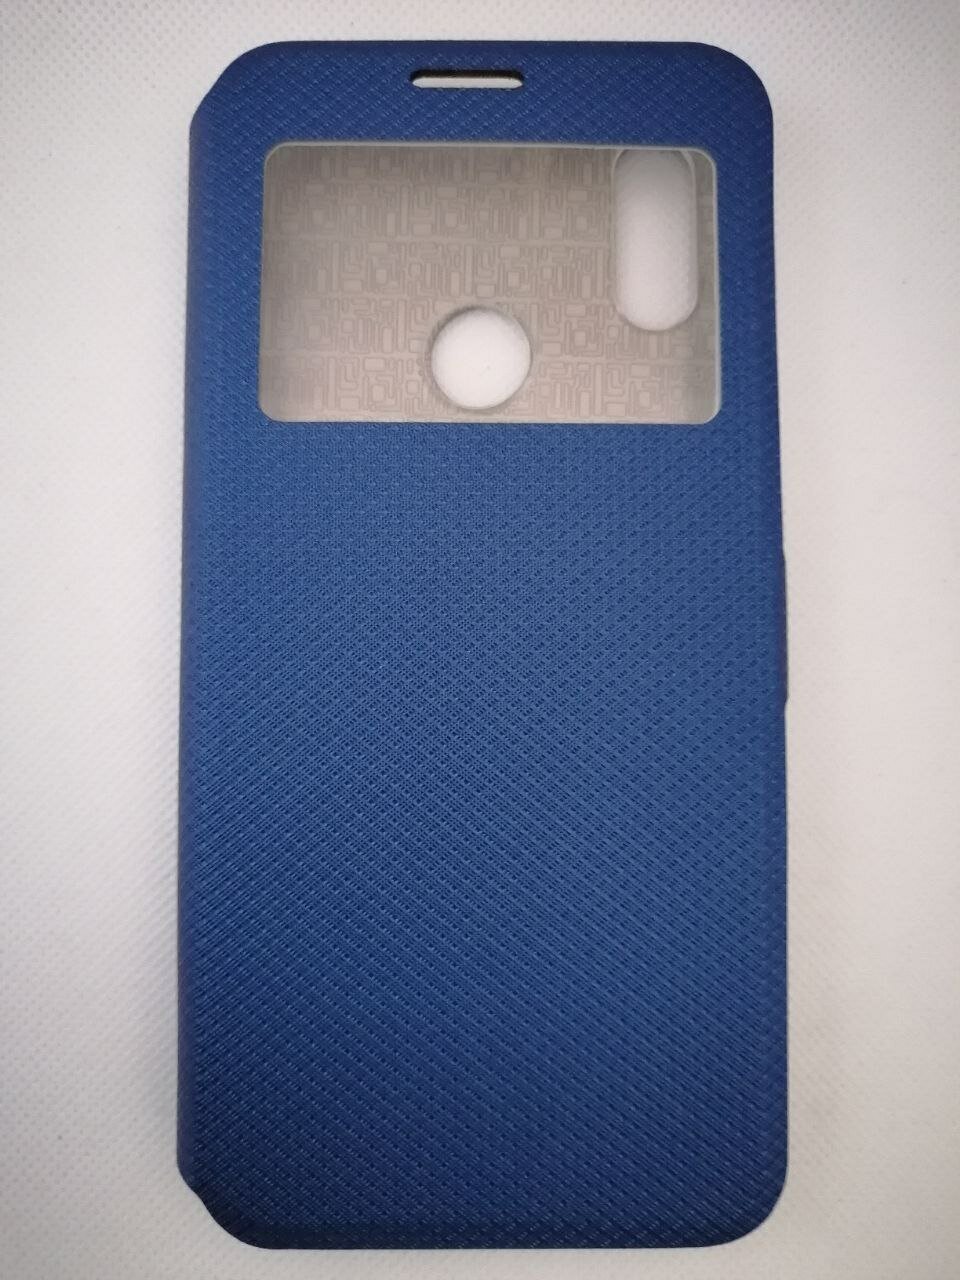 Чехол-книжка для смартфона Huawei Y6 (2018) синего цвета с окошком, магнитной застежкой и подставкой.